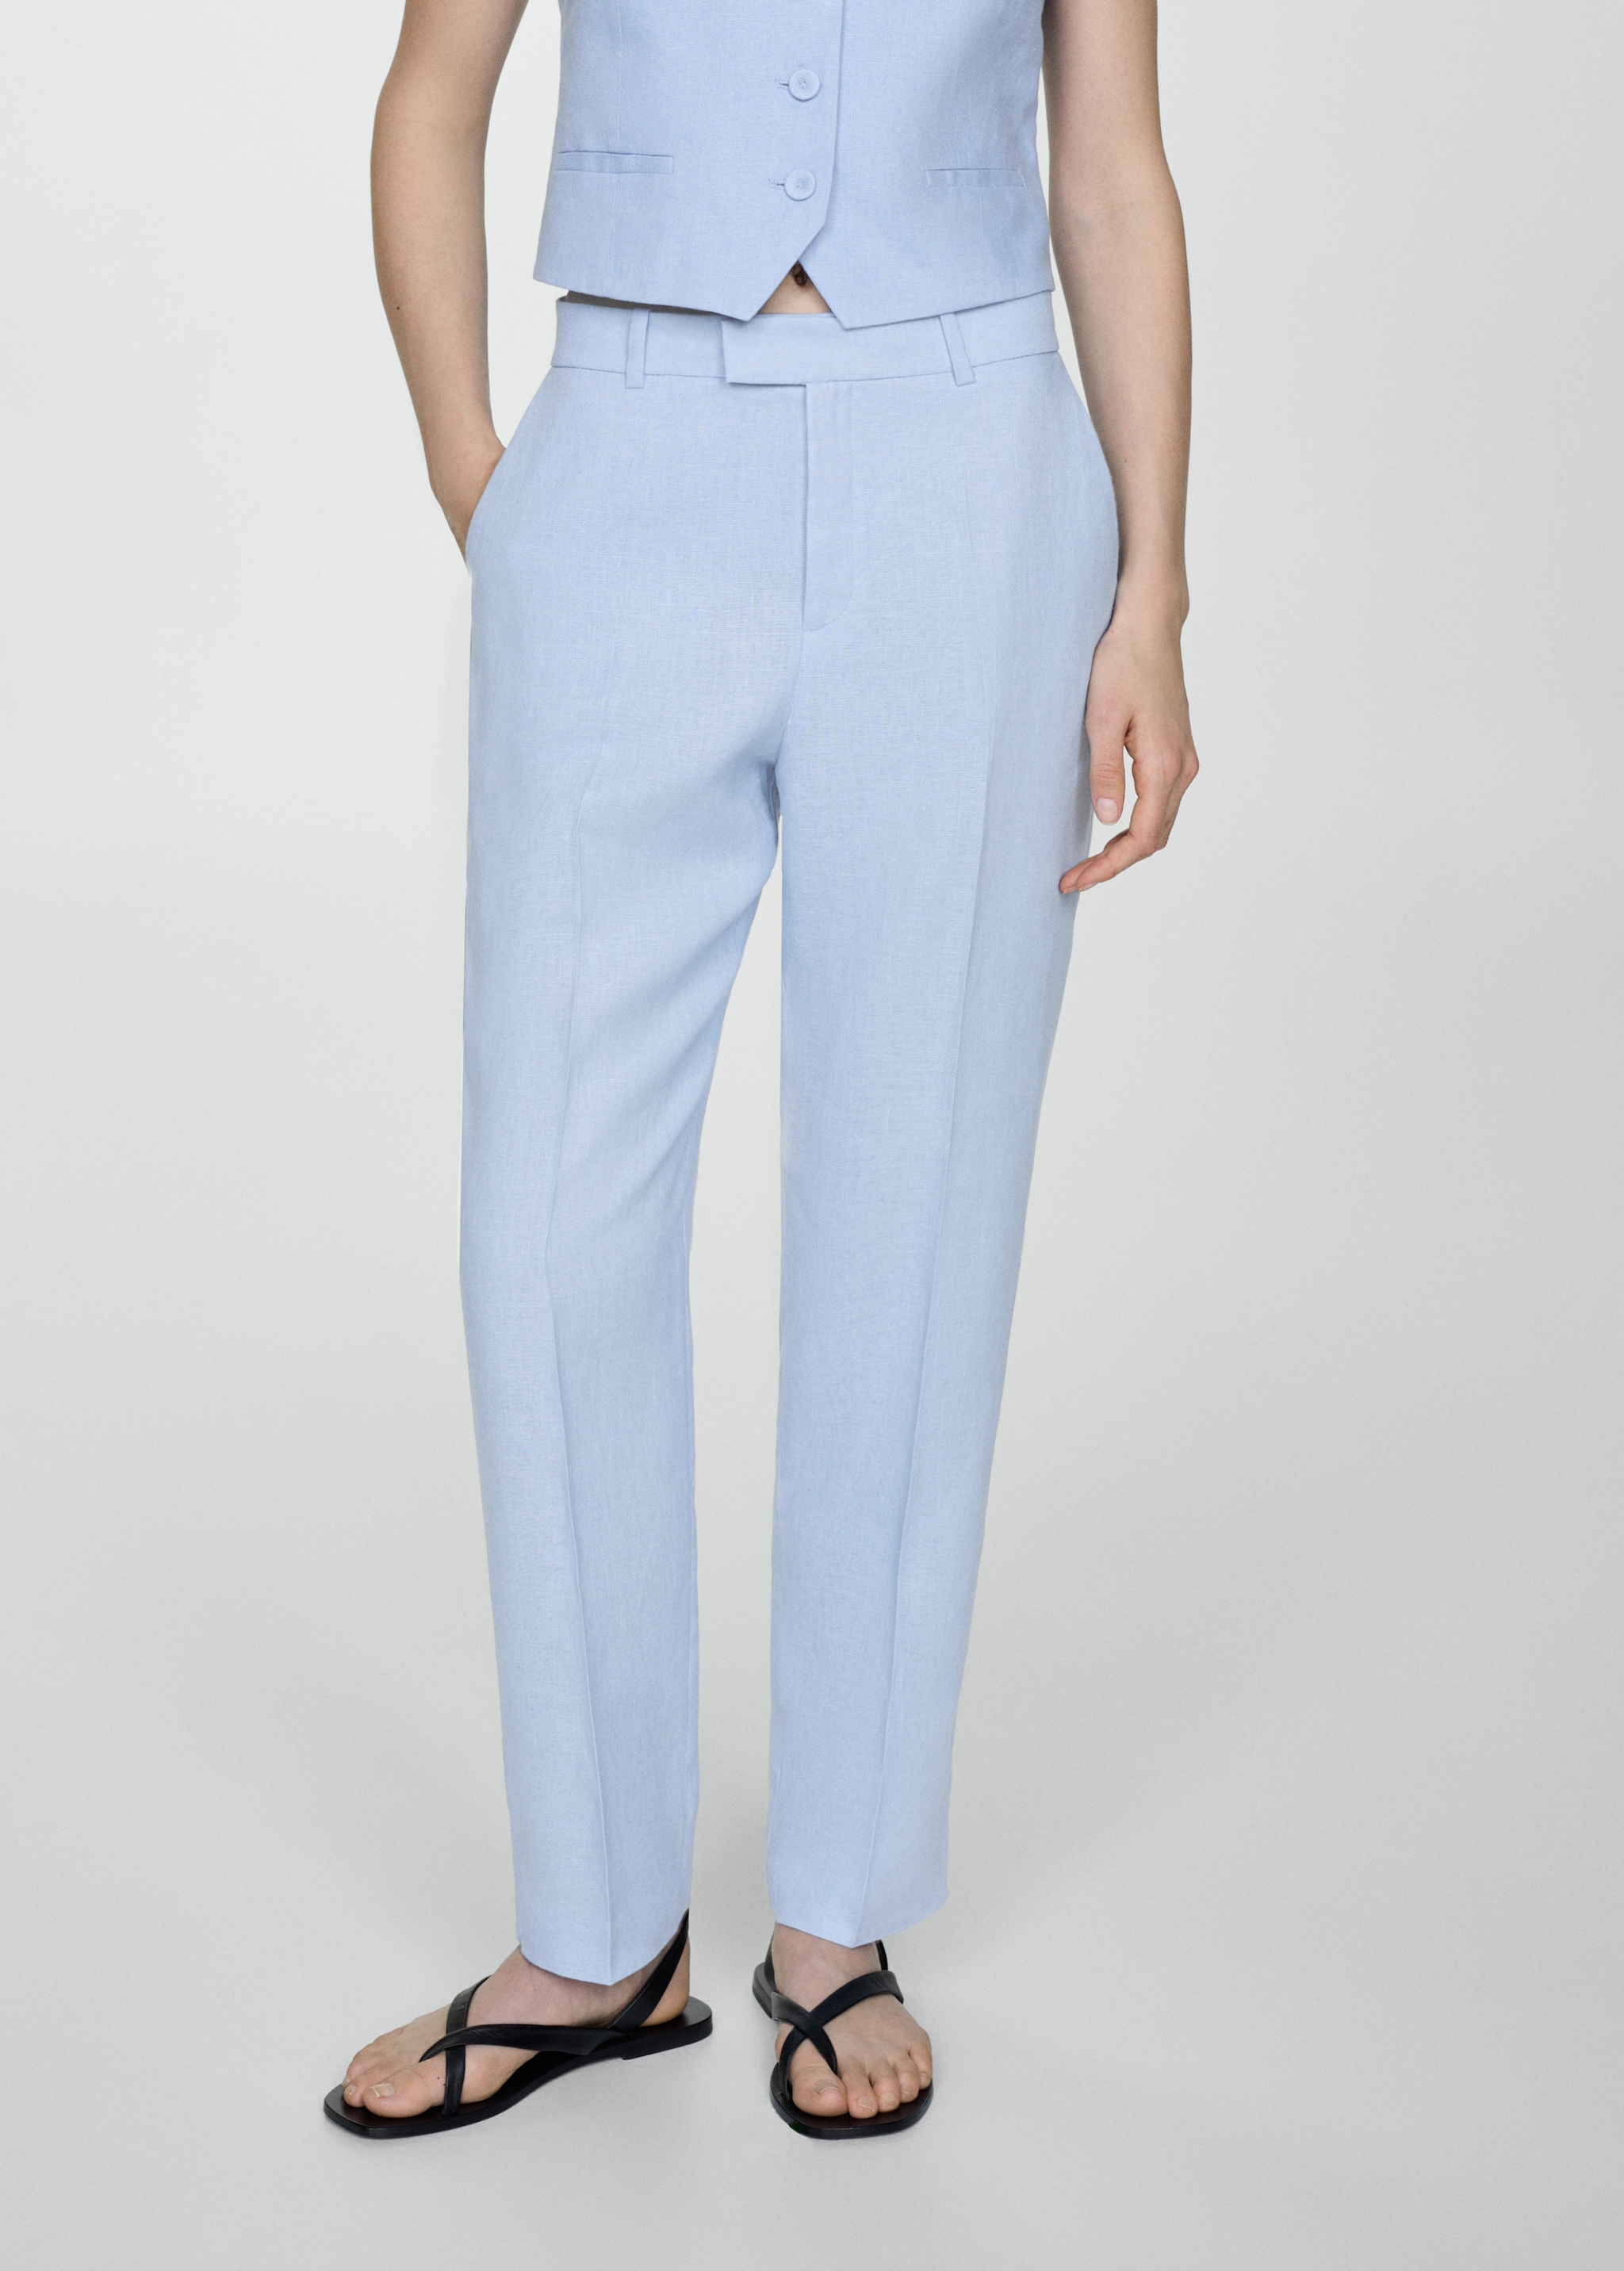 100% linen suit trousers - Medium plane